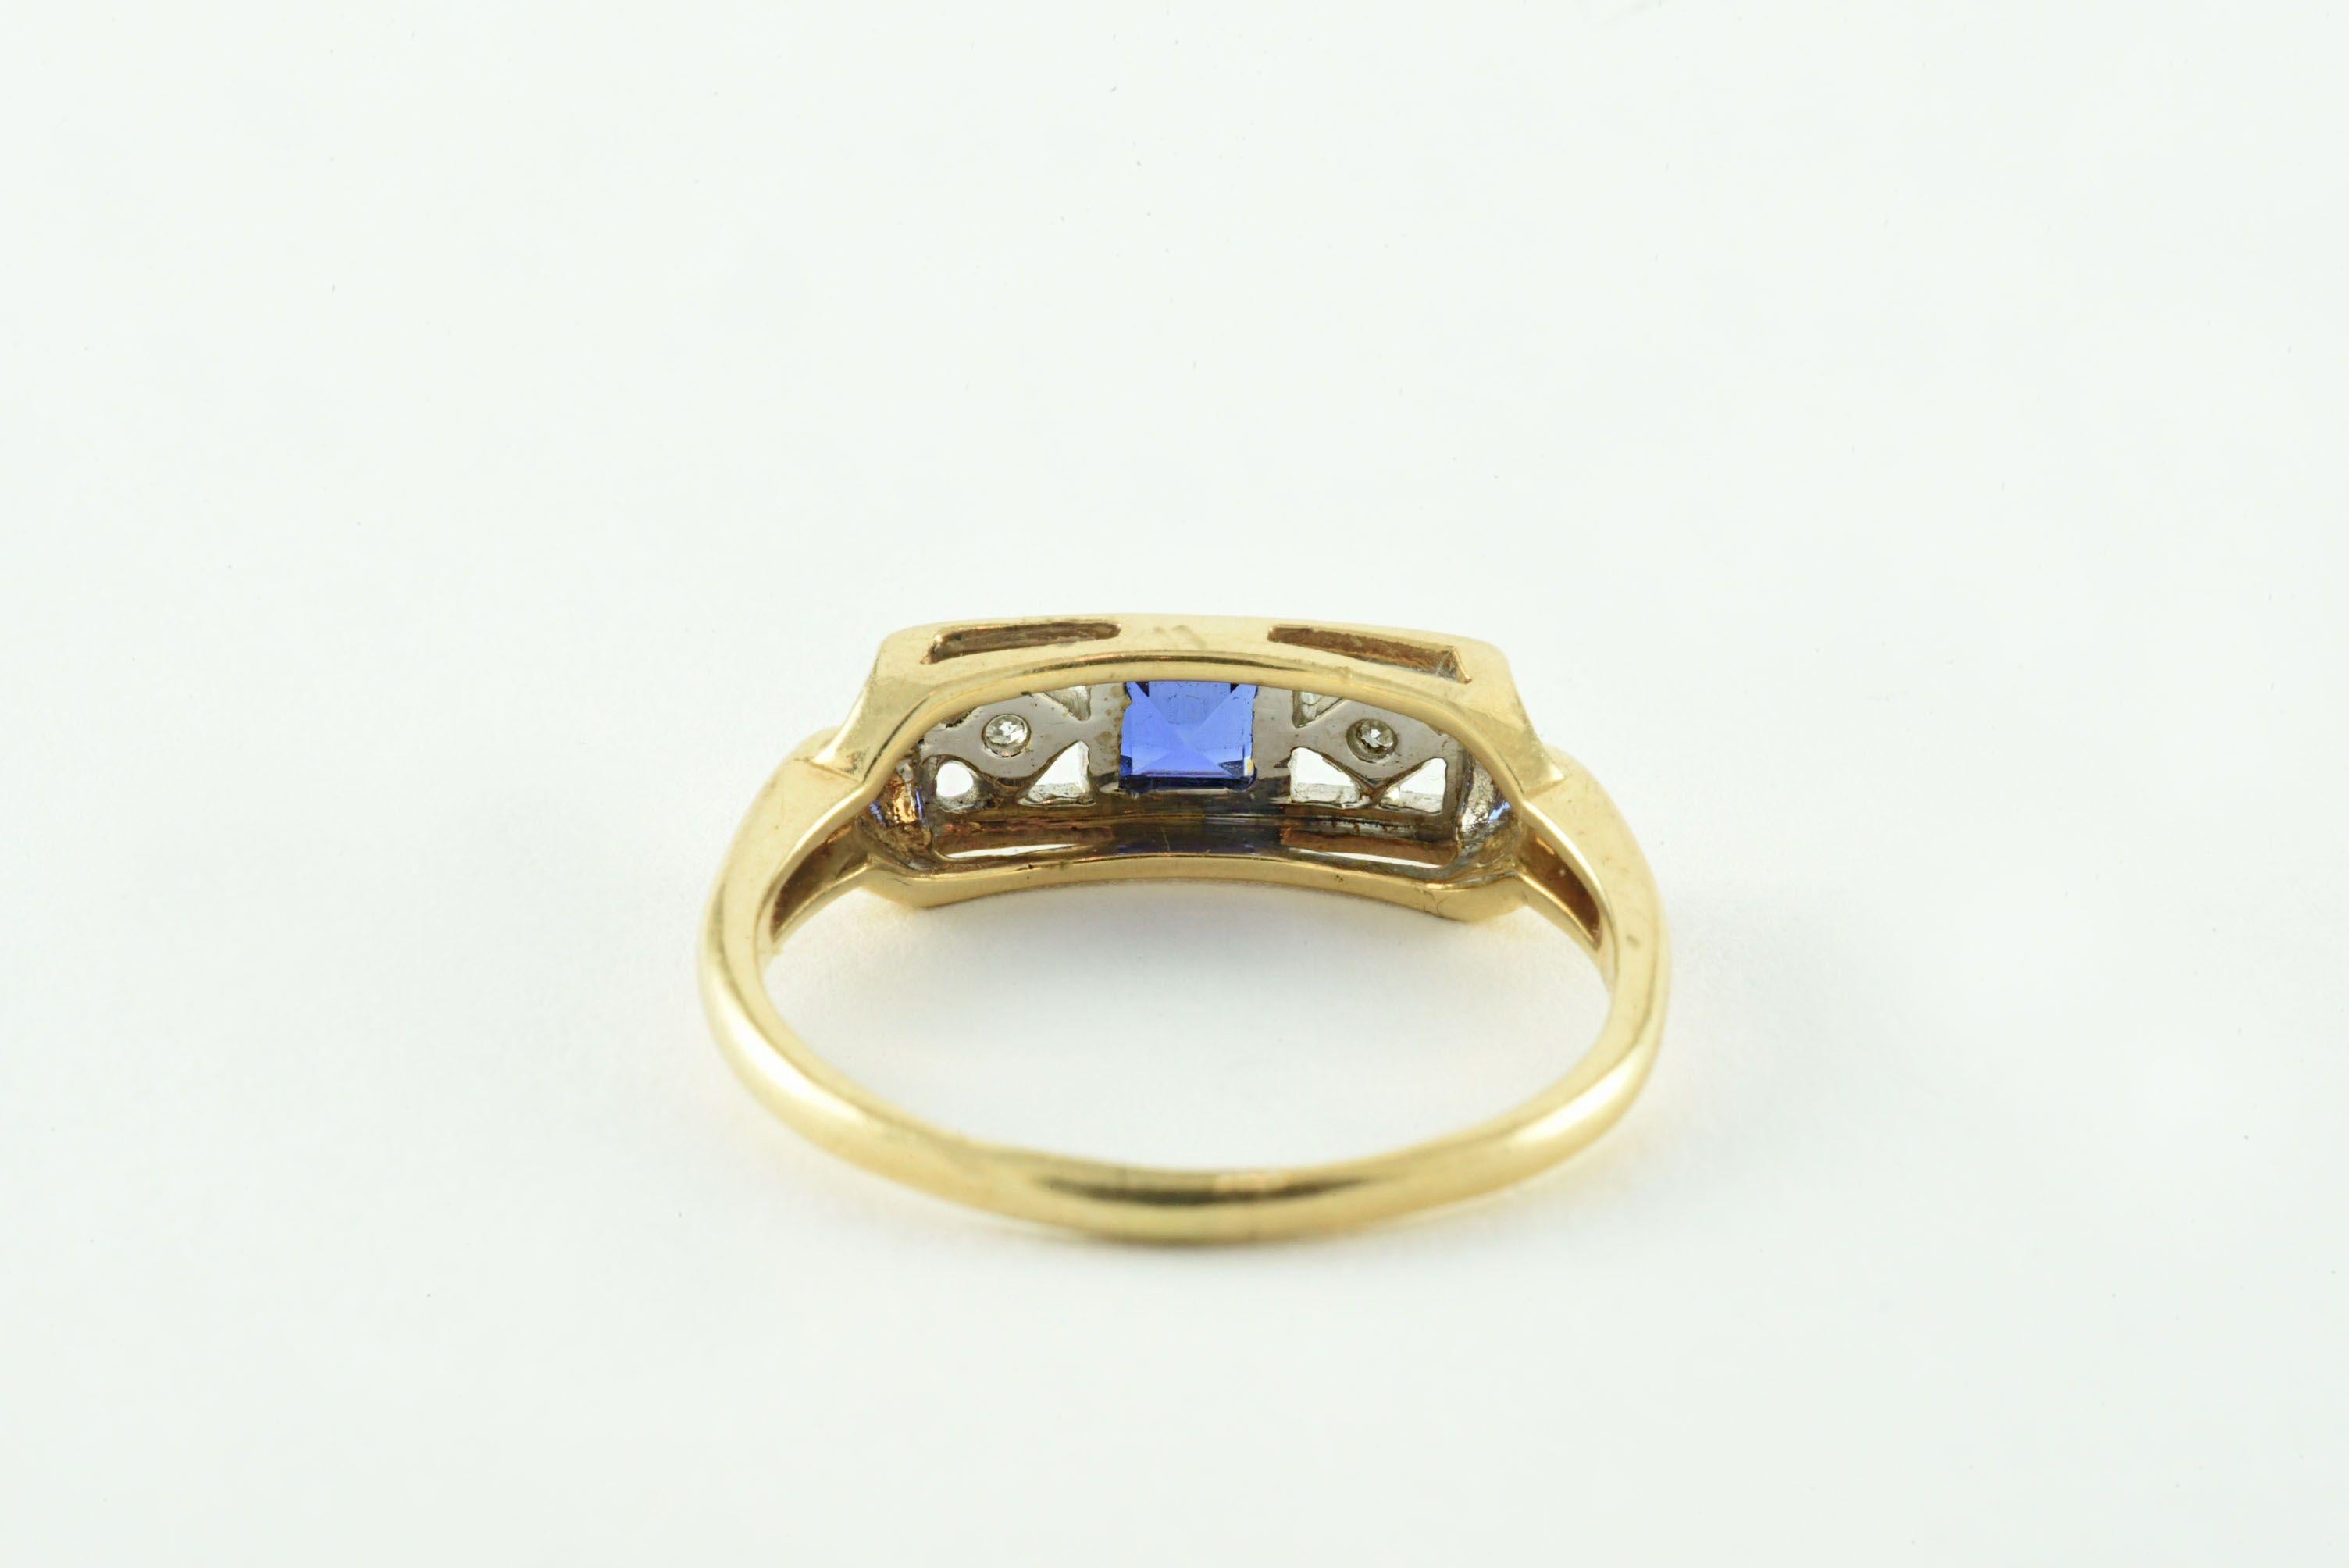 Dieser in den 1920er Jahren gefertigte antike Ring zeigt einen natürlichen blauen, quadratischen Saphir, der im Osten und Westen mit zwei einzeln geschliffenen Diamanten von insgesamt 0,02 Karat in einem durchbrochenen Diamantdesign mit zarter